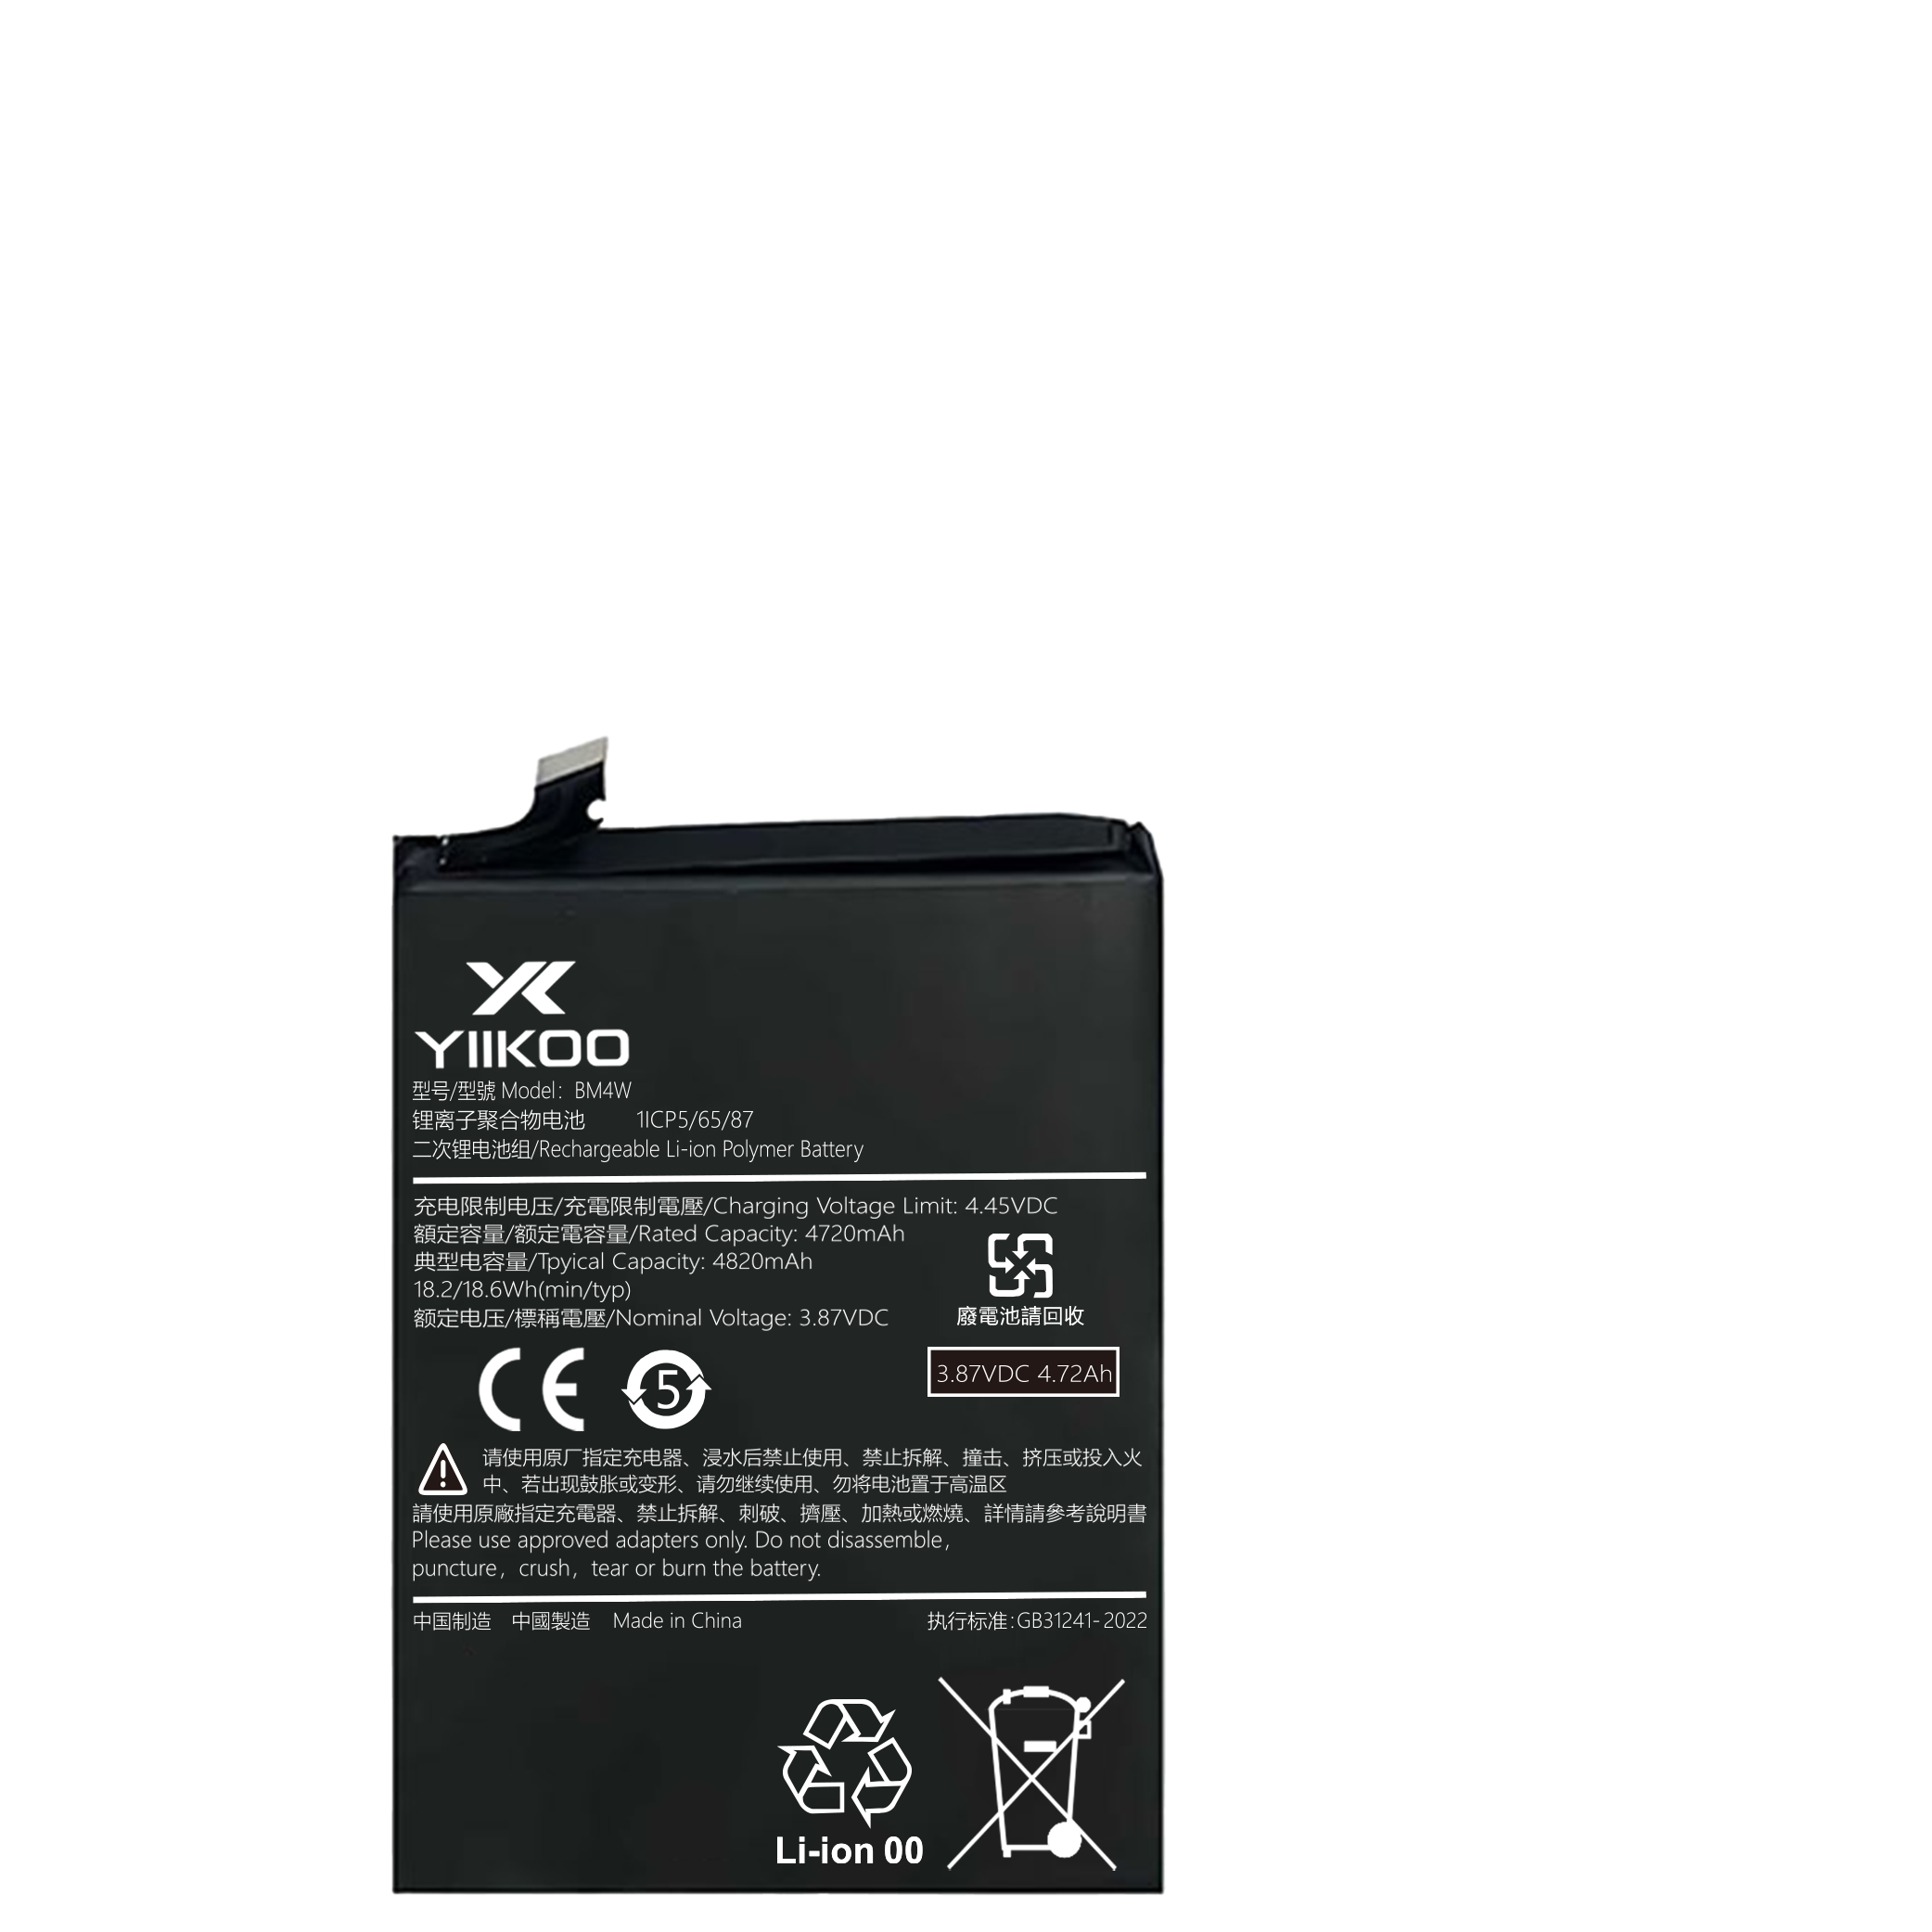 Hongmi Note9pro Battery (4720mAh) BM4W